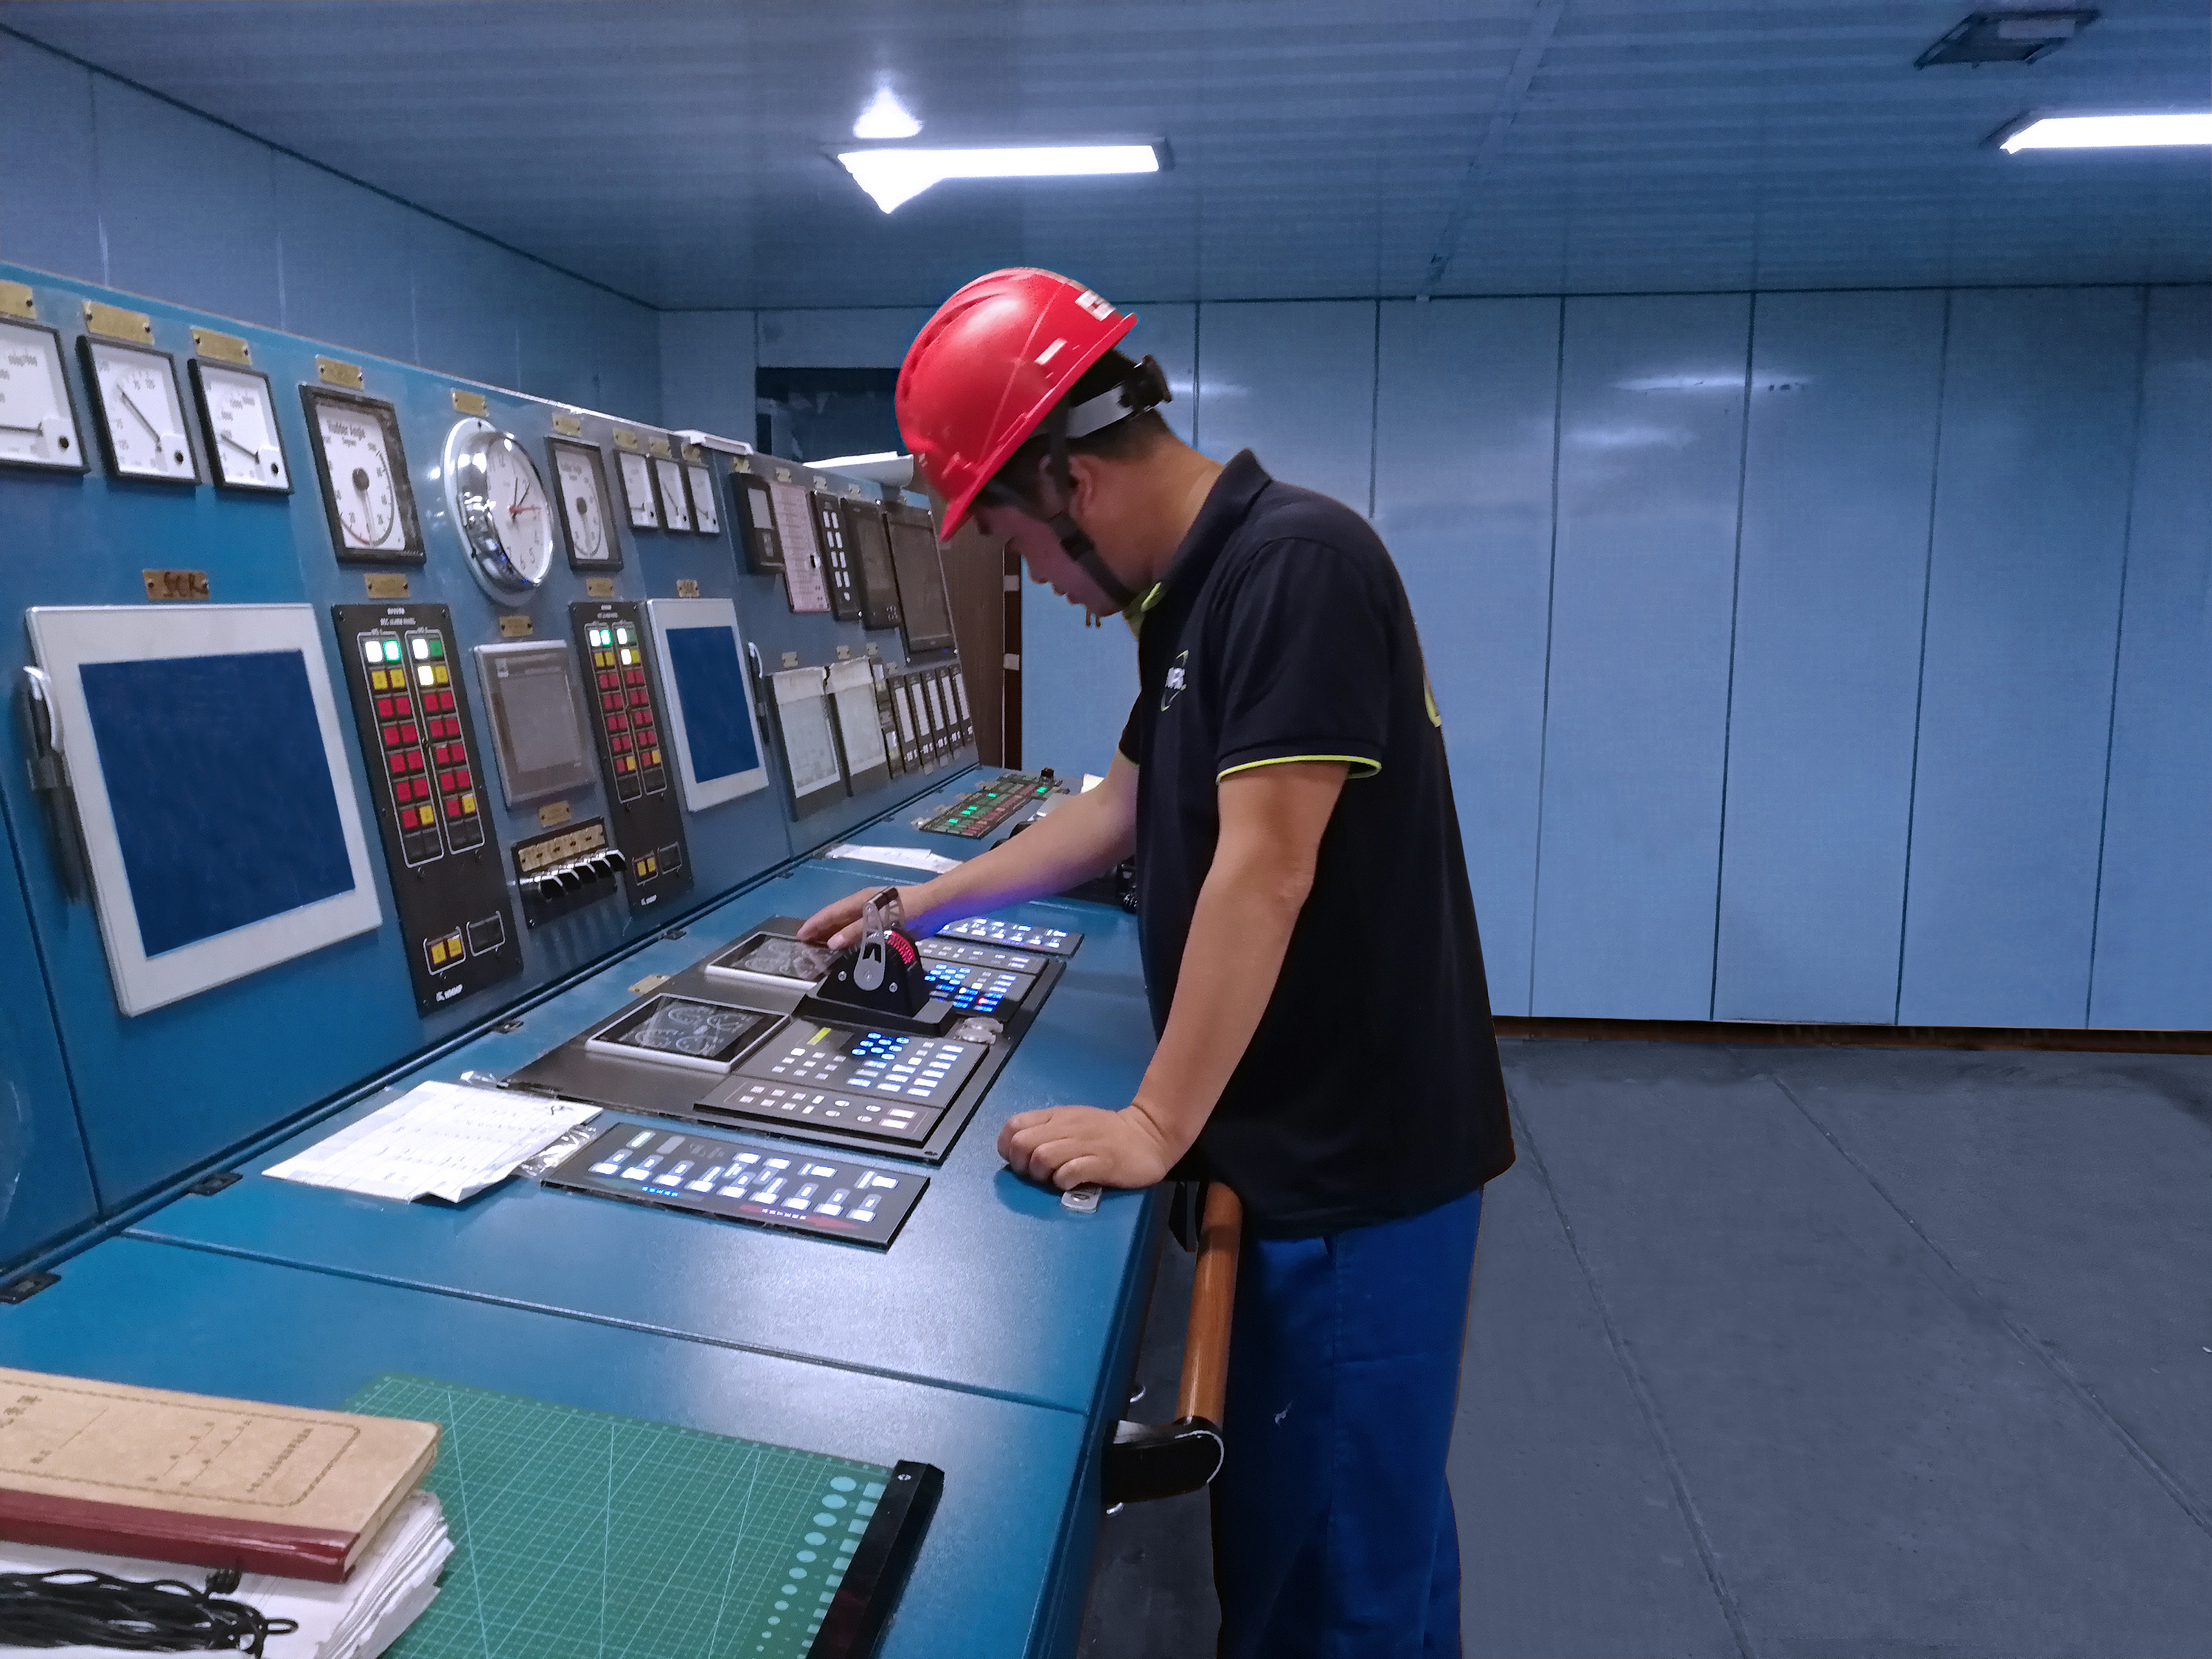 Das Bild zeigt einen Servicemitarbeiter von Noris in einem Maschinenkontrollraum mit blauen  Wänden. Er steht an einem Fahrhebelpaneel und prüft die Funktionalität.